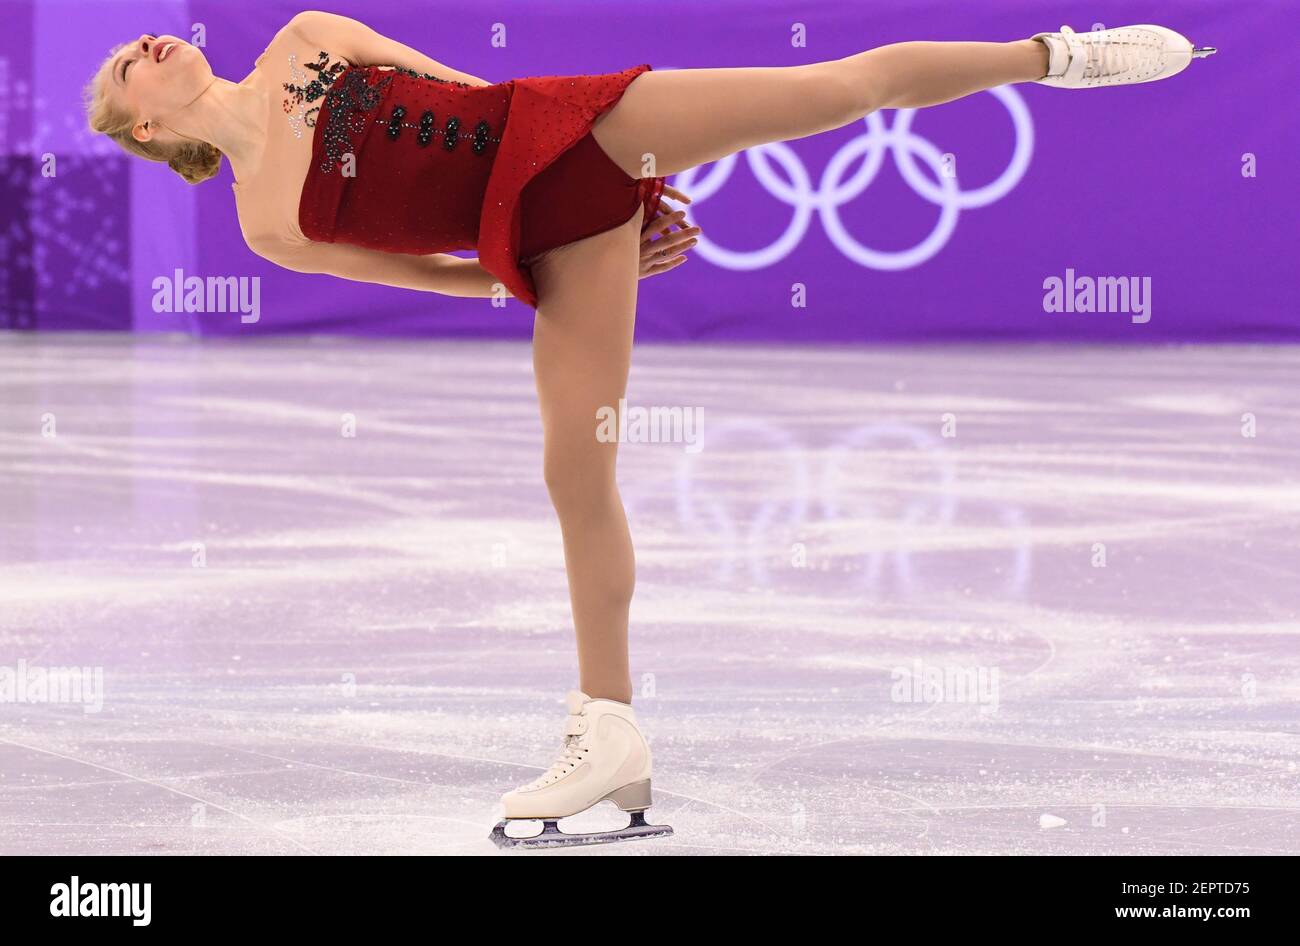 11 de febrero de 2018; Pyeongchang, Corea del Sur; Bradie Tennell (EE.UU.)  durante el evento de patinaje artístico de la figura del equipo de mujeres  durante los Juegos Olímpicos de Invierno 2018